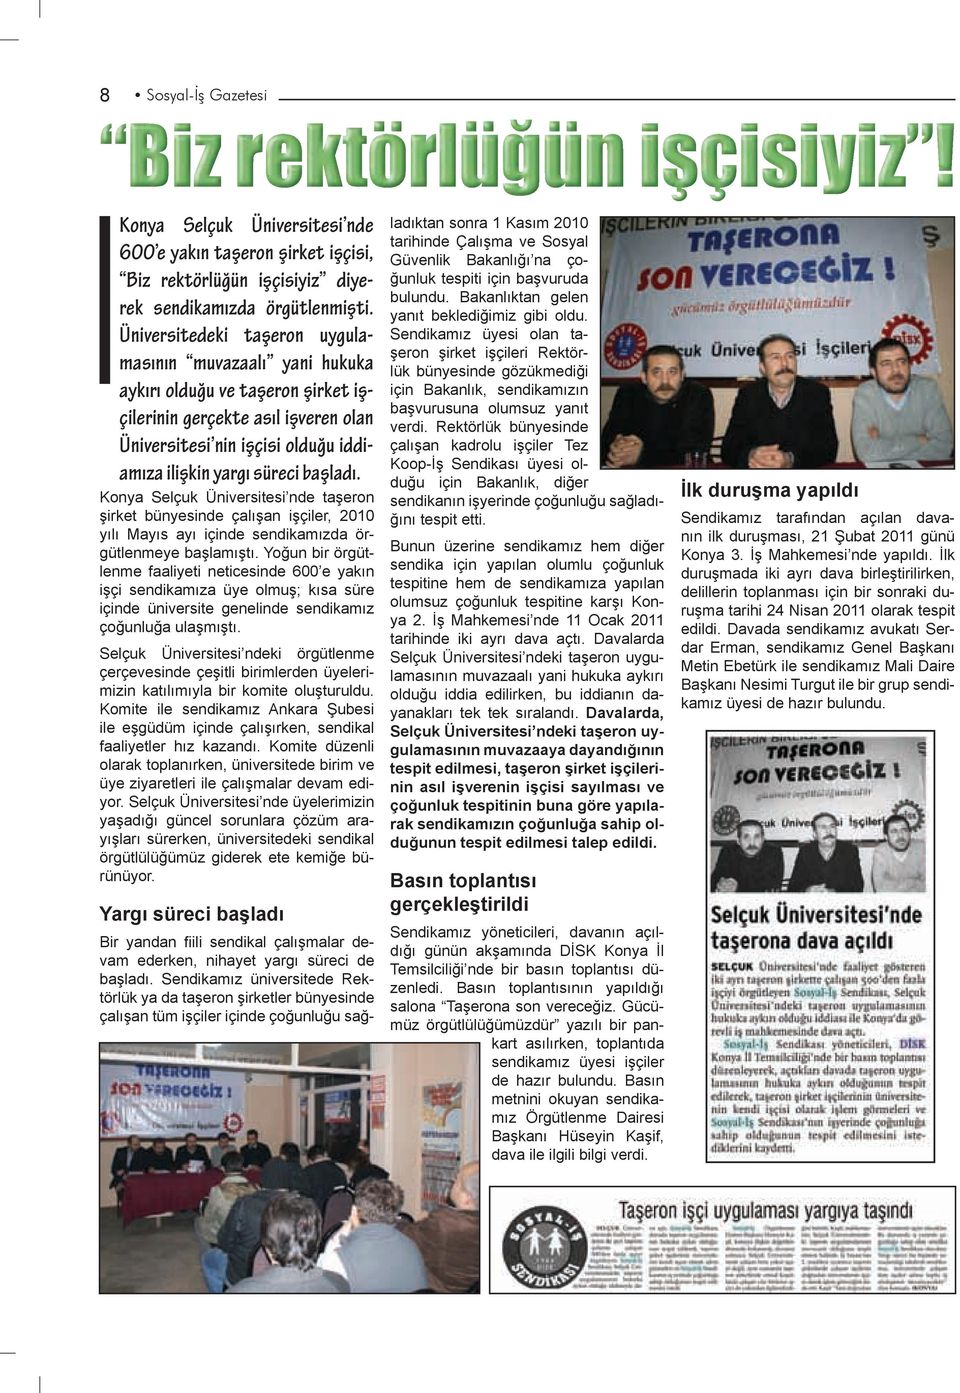 Konya Selçuk Üniversitesi nde taşeron şirket bünyesinde çalışan işçiler, 2010 yılı Mayıs ayı içinde sendikamızda örgütlenmeye başlamıştı.